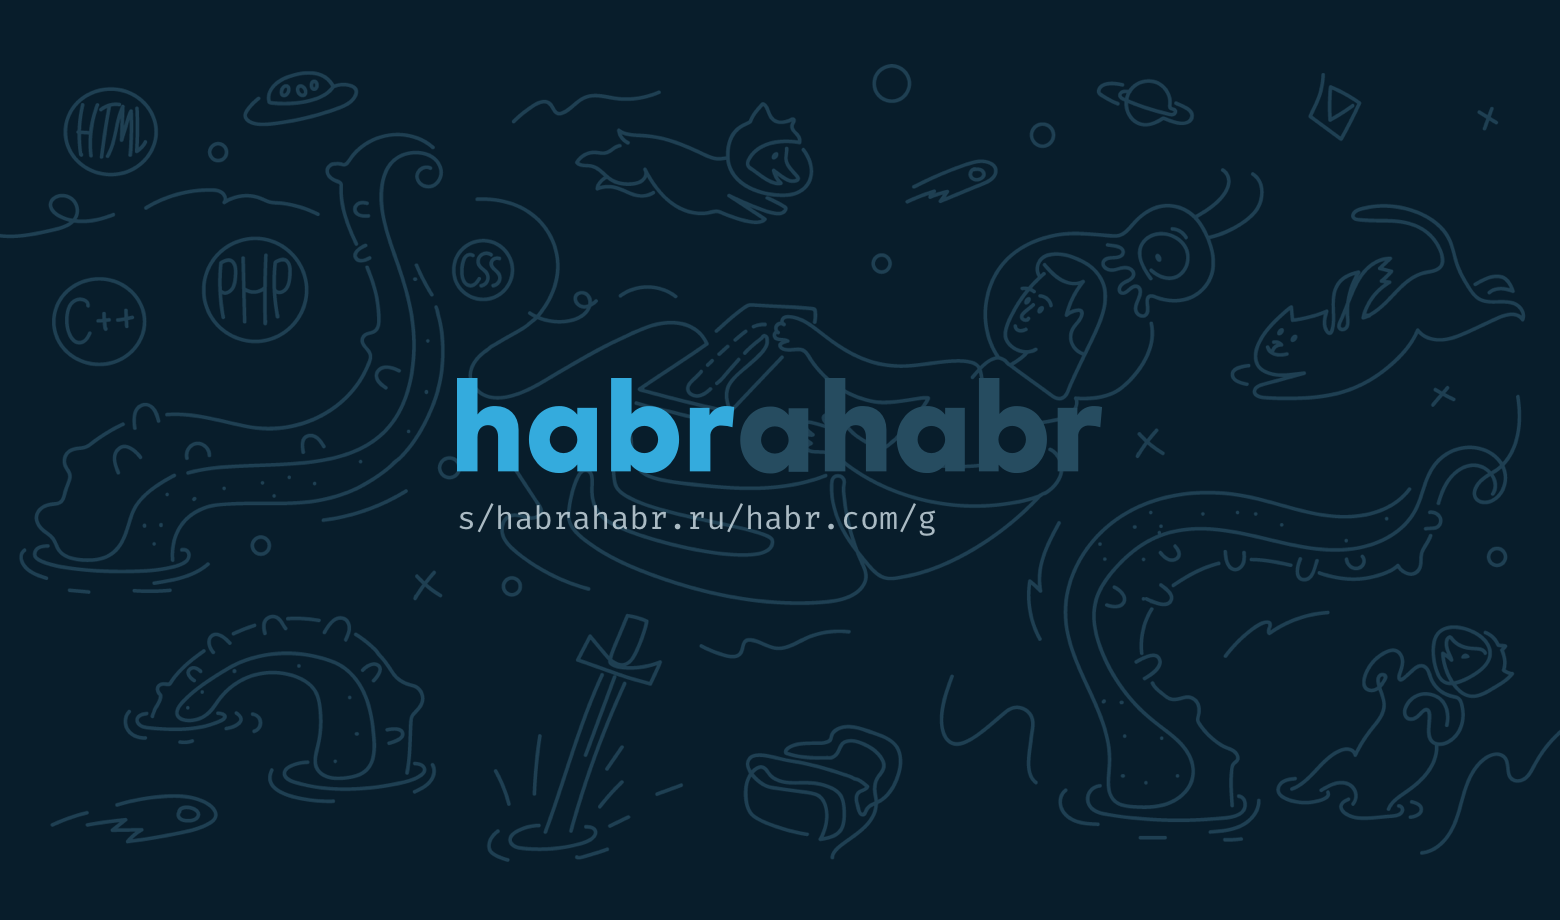 "Хабрахабр" попал в список запрещенных сайтов